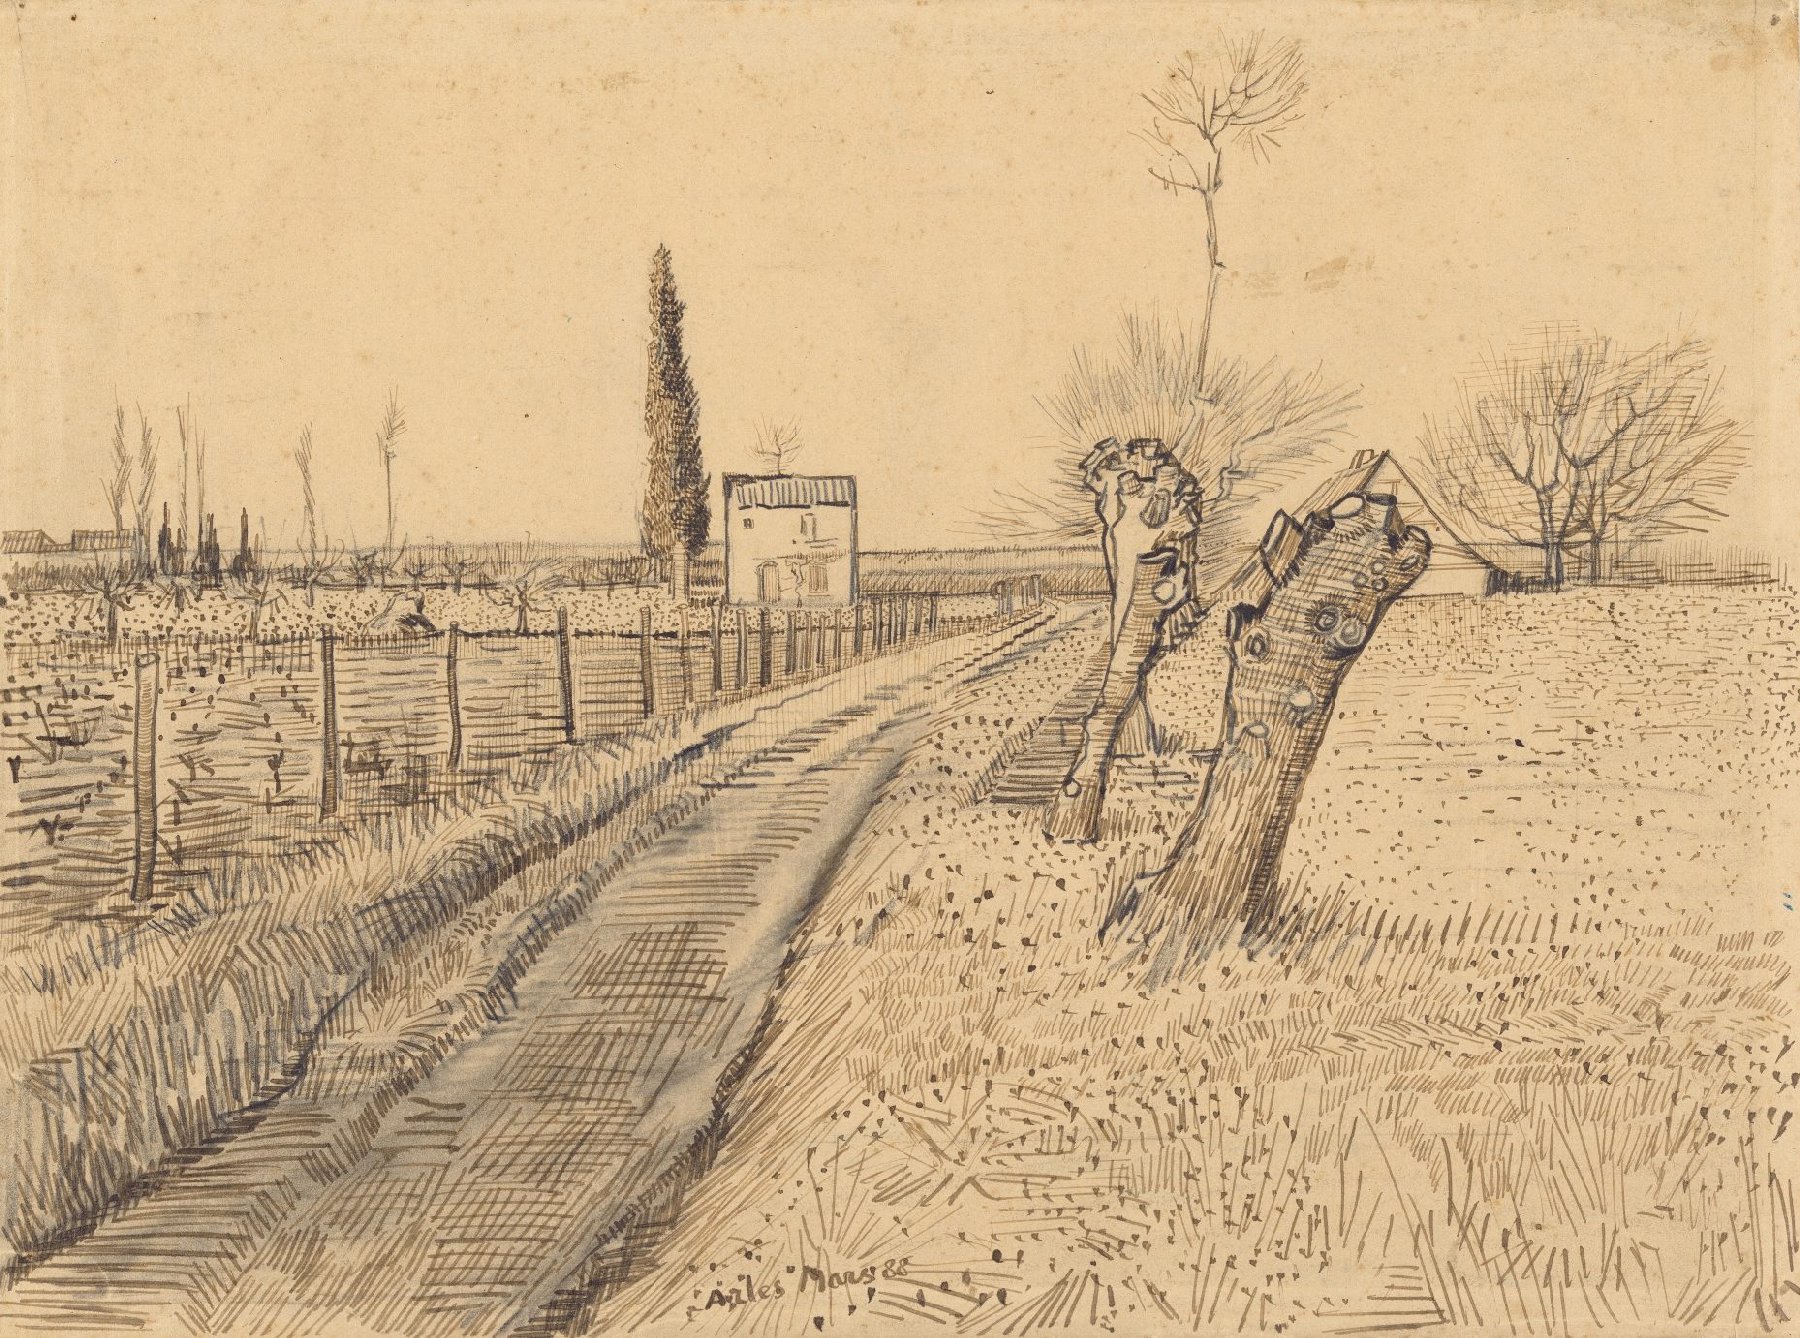 Landschap met pad en knotwilgen Vincent van Gogh (1853 - 1890), Arles, maart 1888